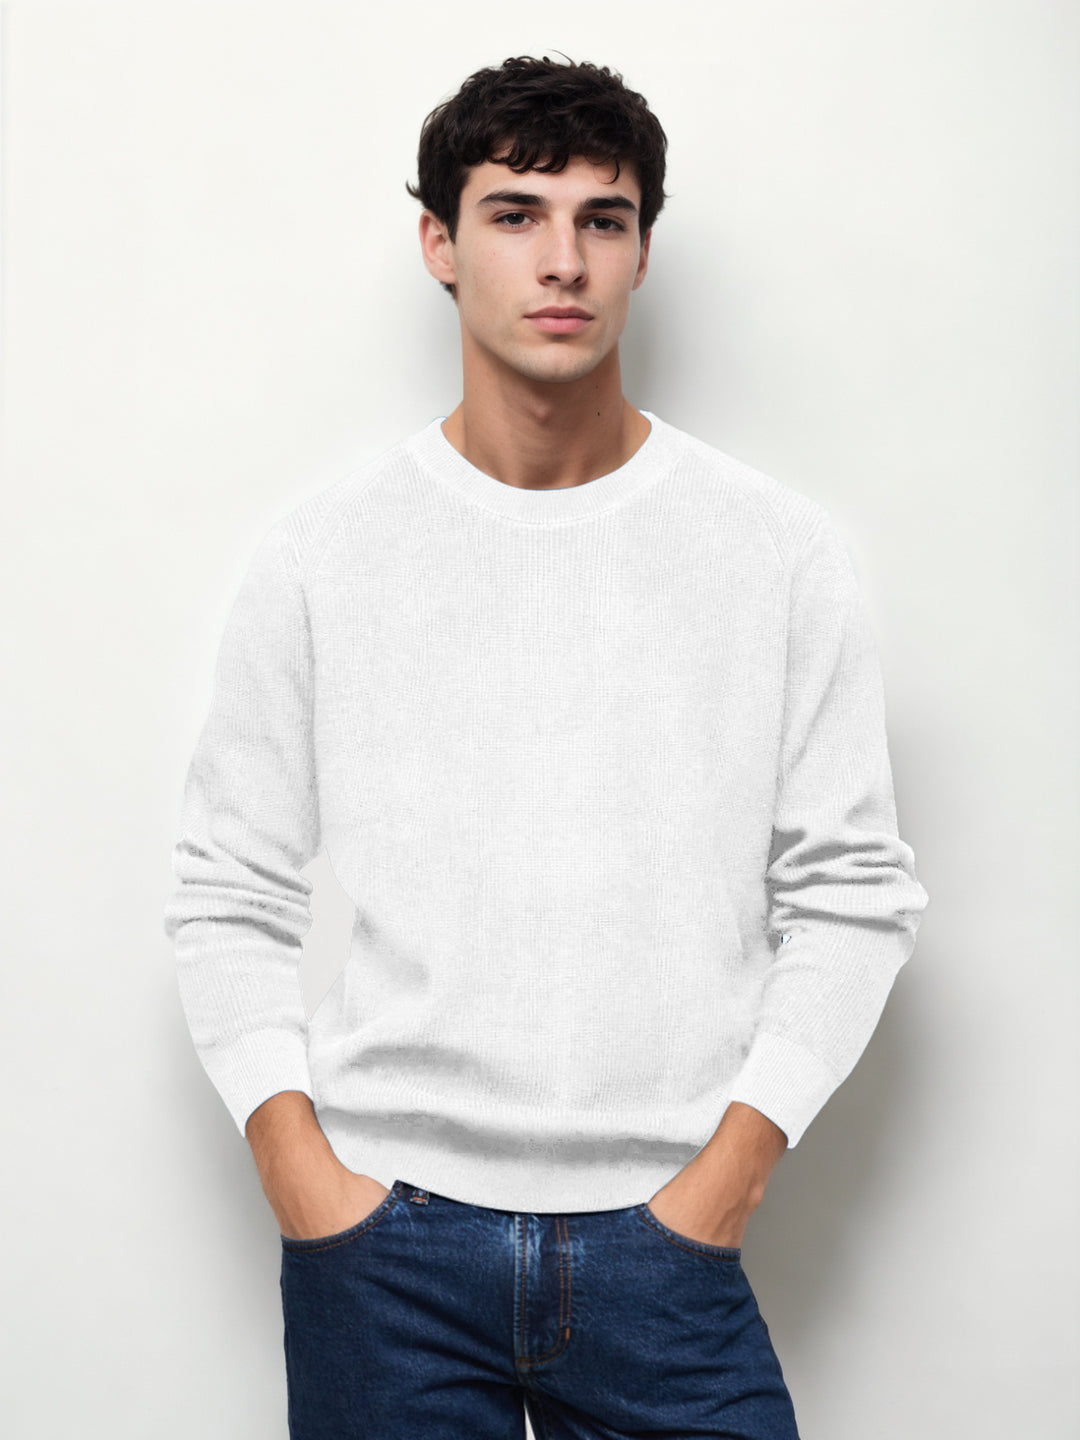 Hemsters White Knitted Full Sleevs Sweatshirt For Men